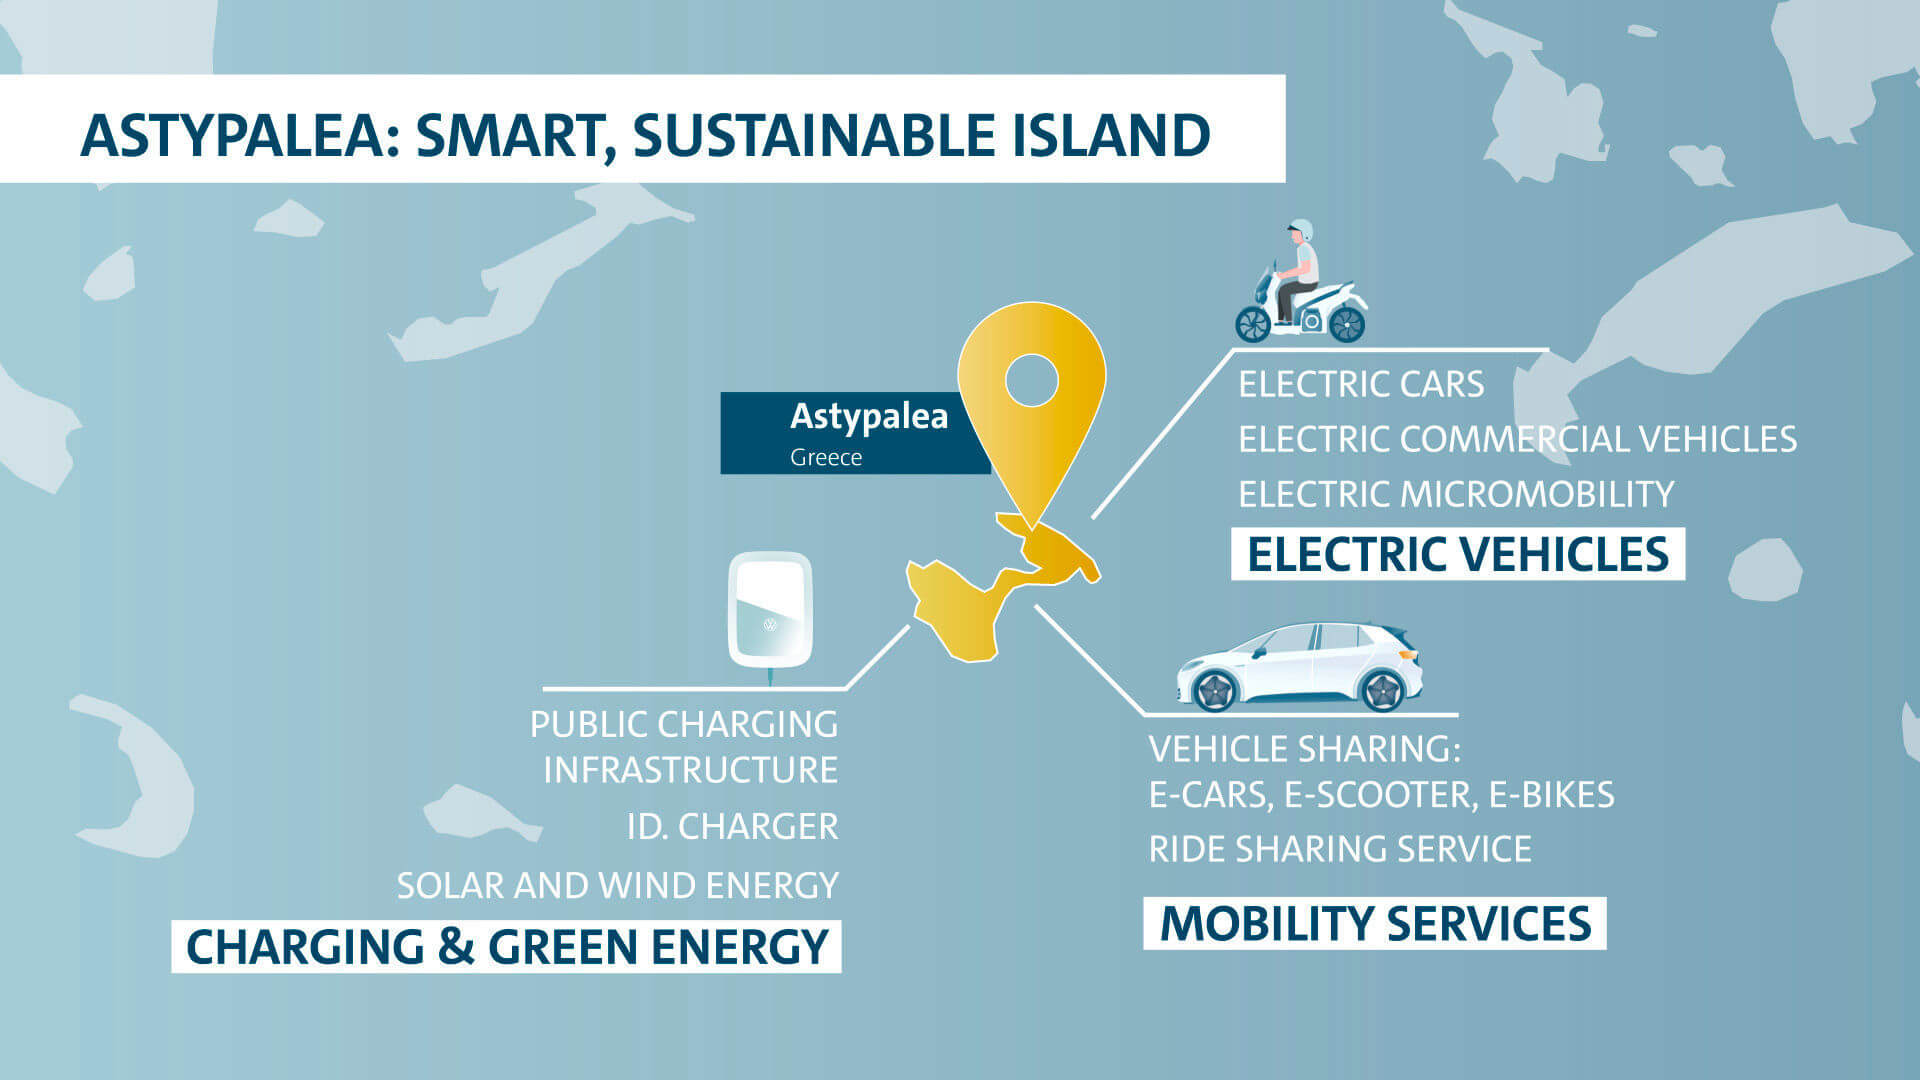 Volkswagen электрифицирует греческий остров Астипалея